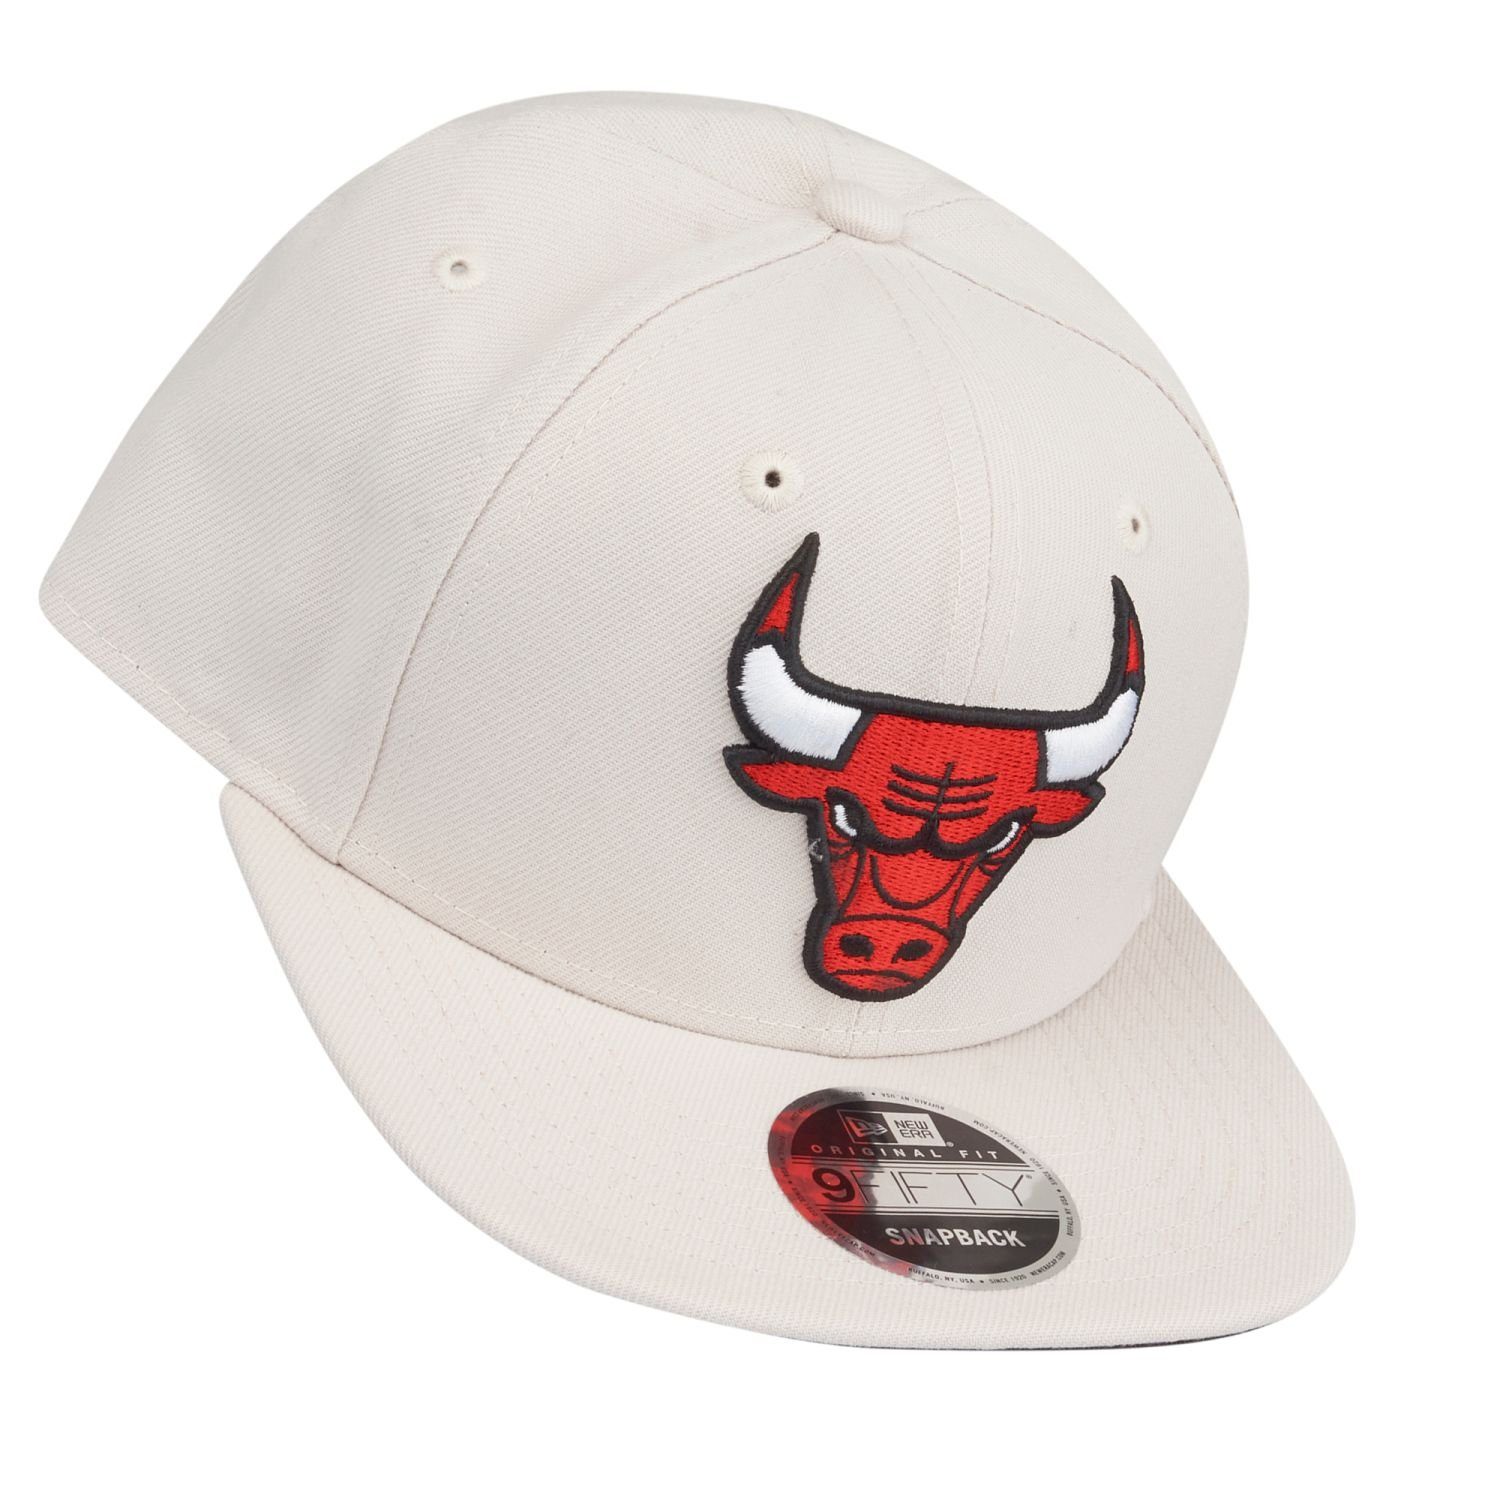 New Era Snapback Bulls Chicago 9Fifty Cap Original